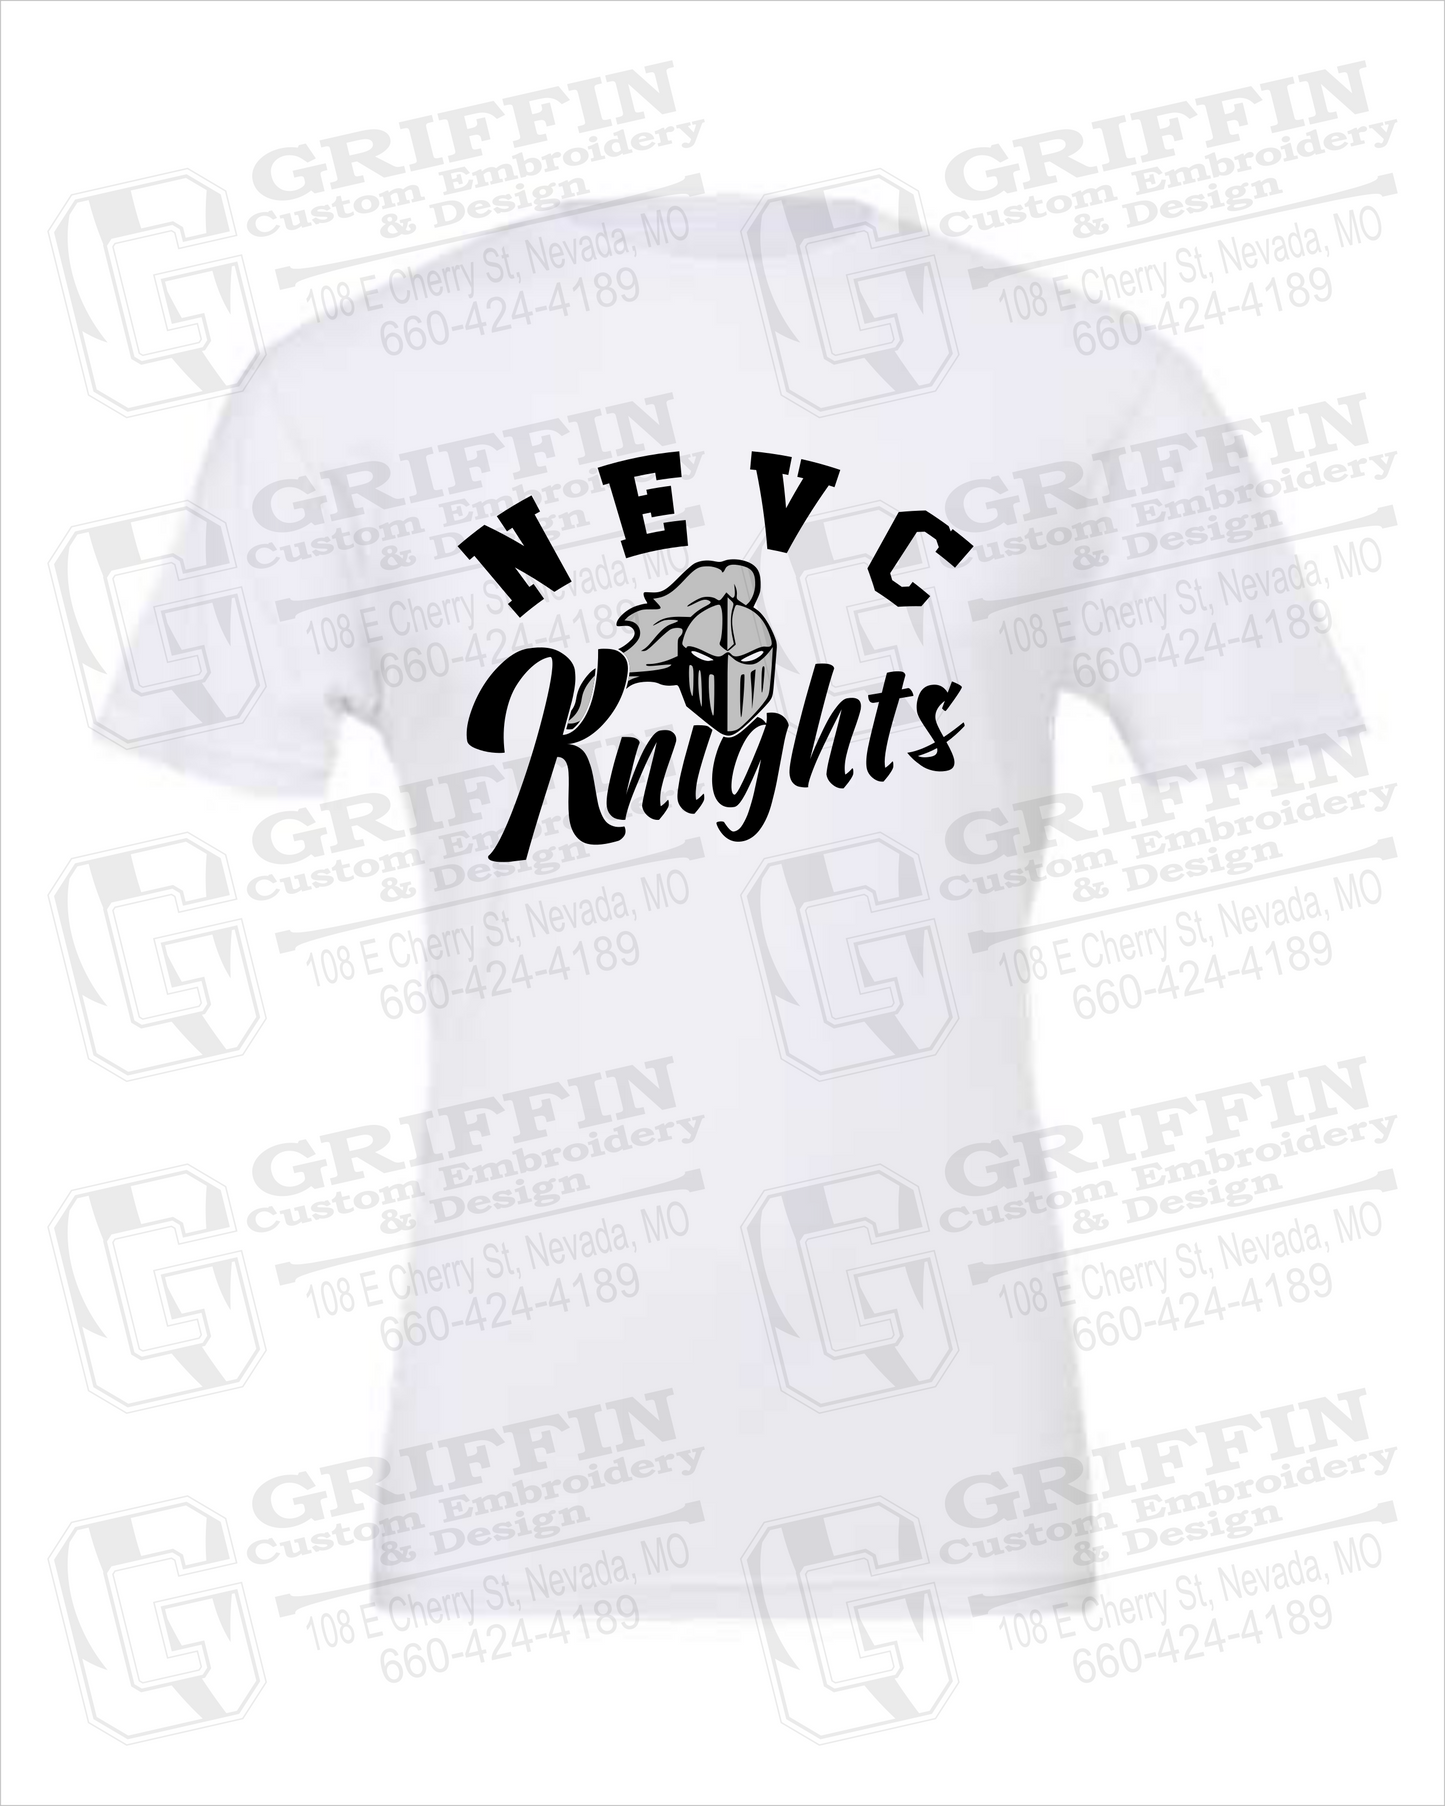 NEVC Knights 23-D 100% Cotton Short Sleeve T-Shirt